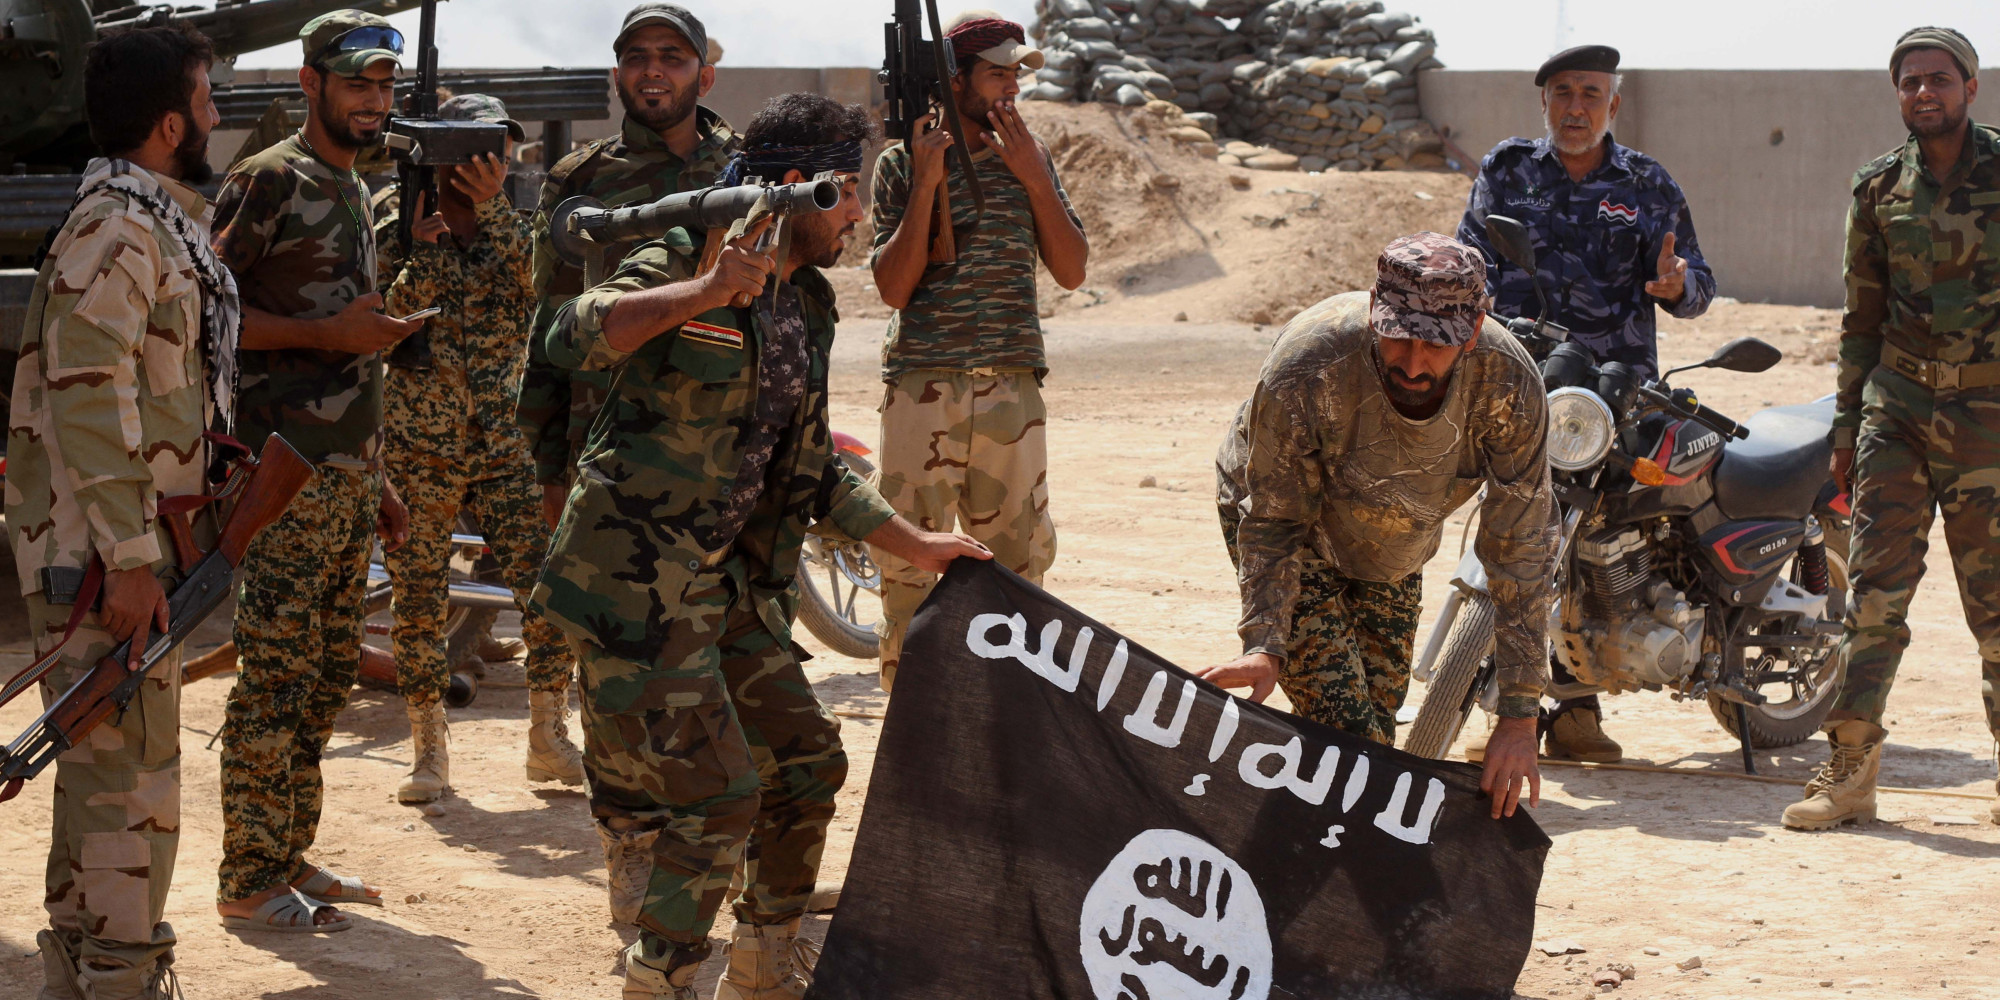 Игил харасан. Исламское государство Ирака и Сирии. Террористическая группировка «Исламское государство» в Сирии. Исламистская группировка Вилаят Синай.